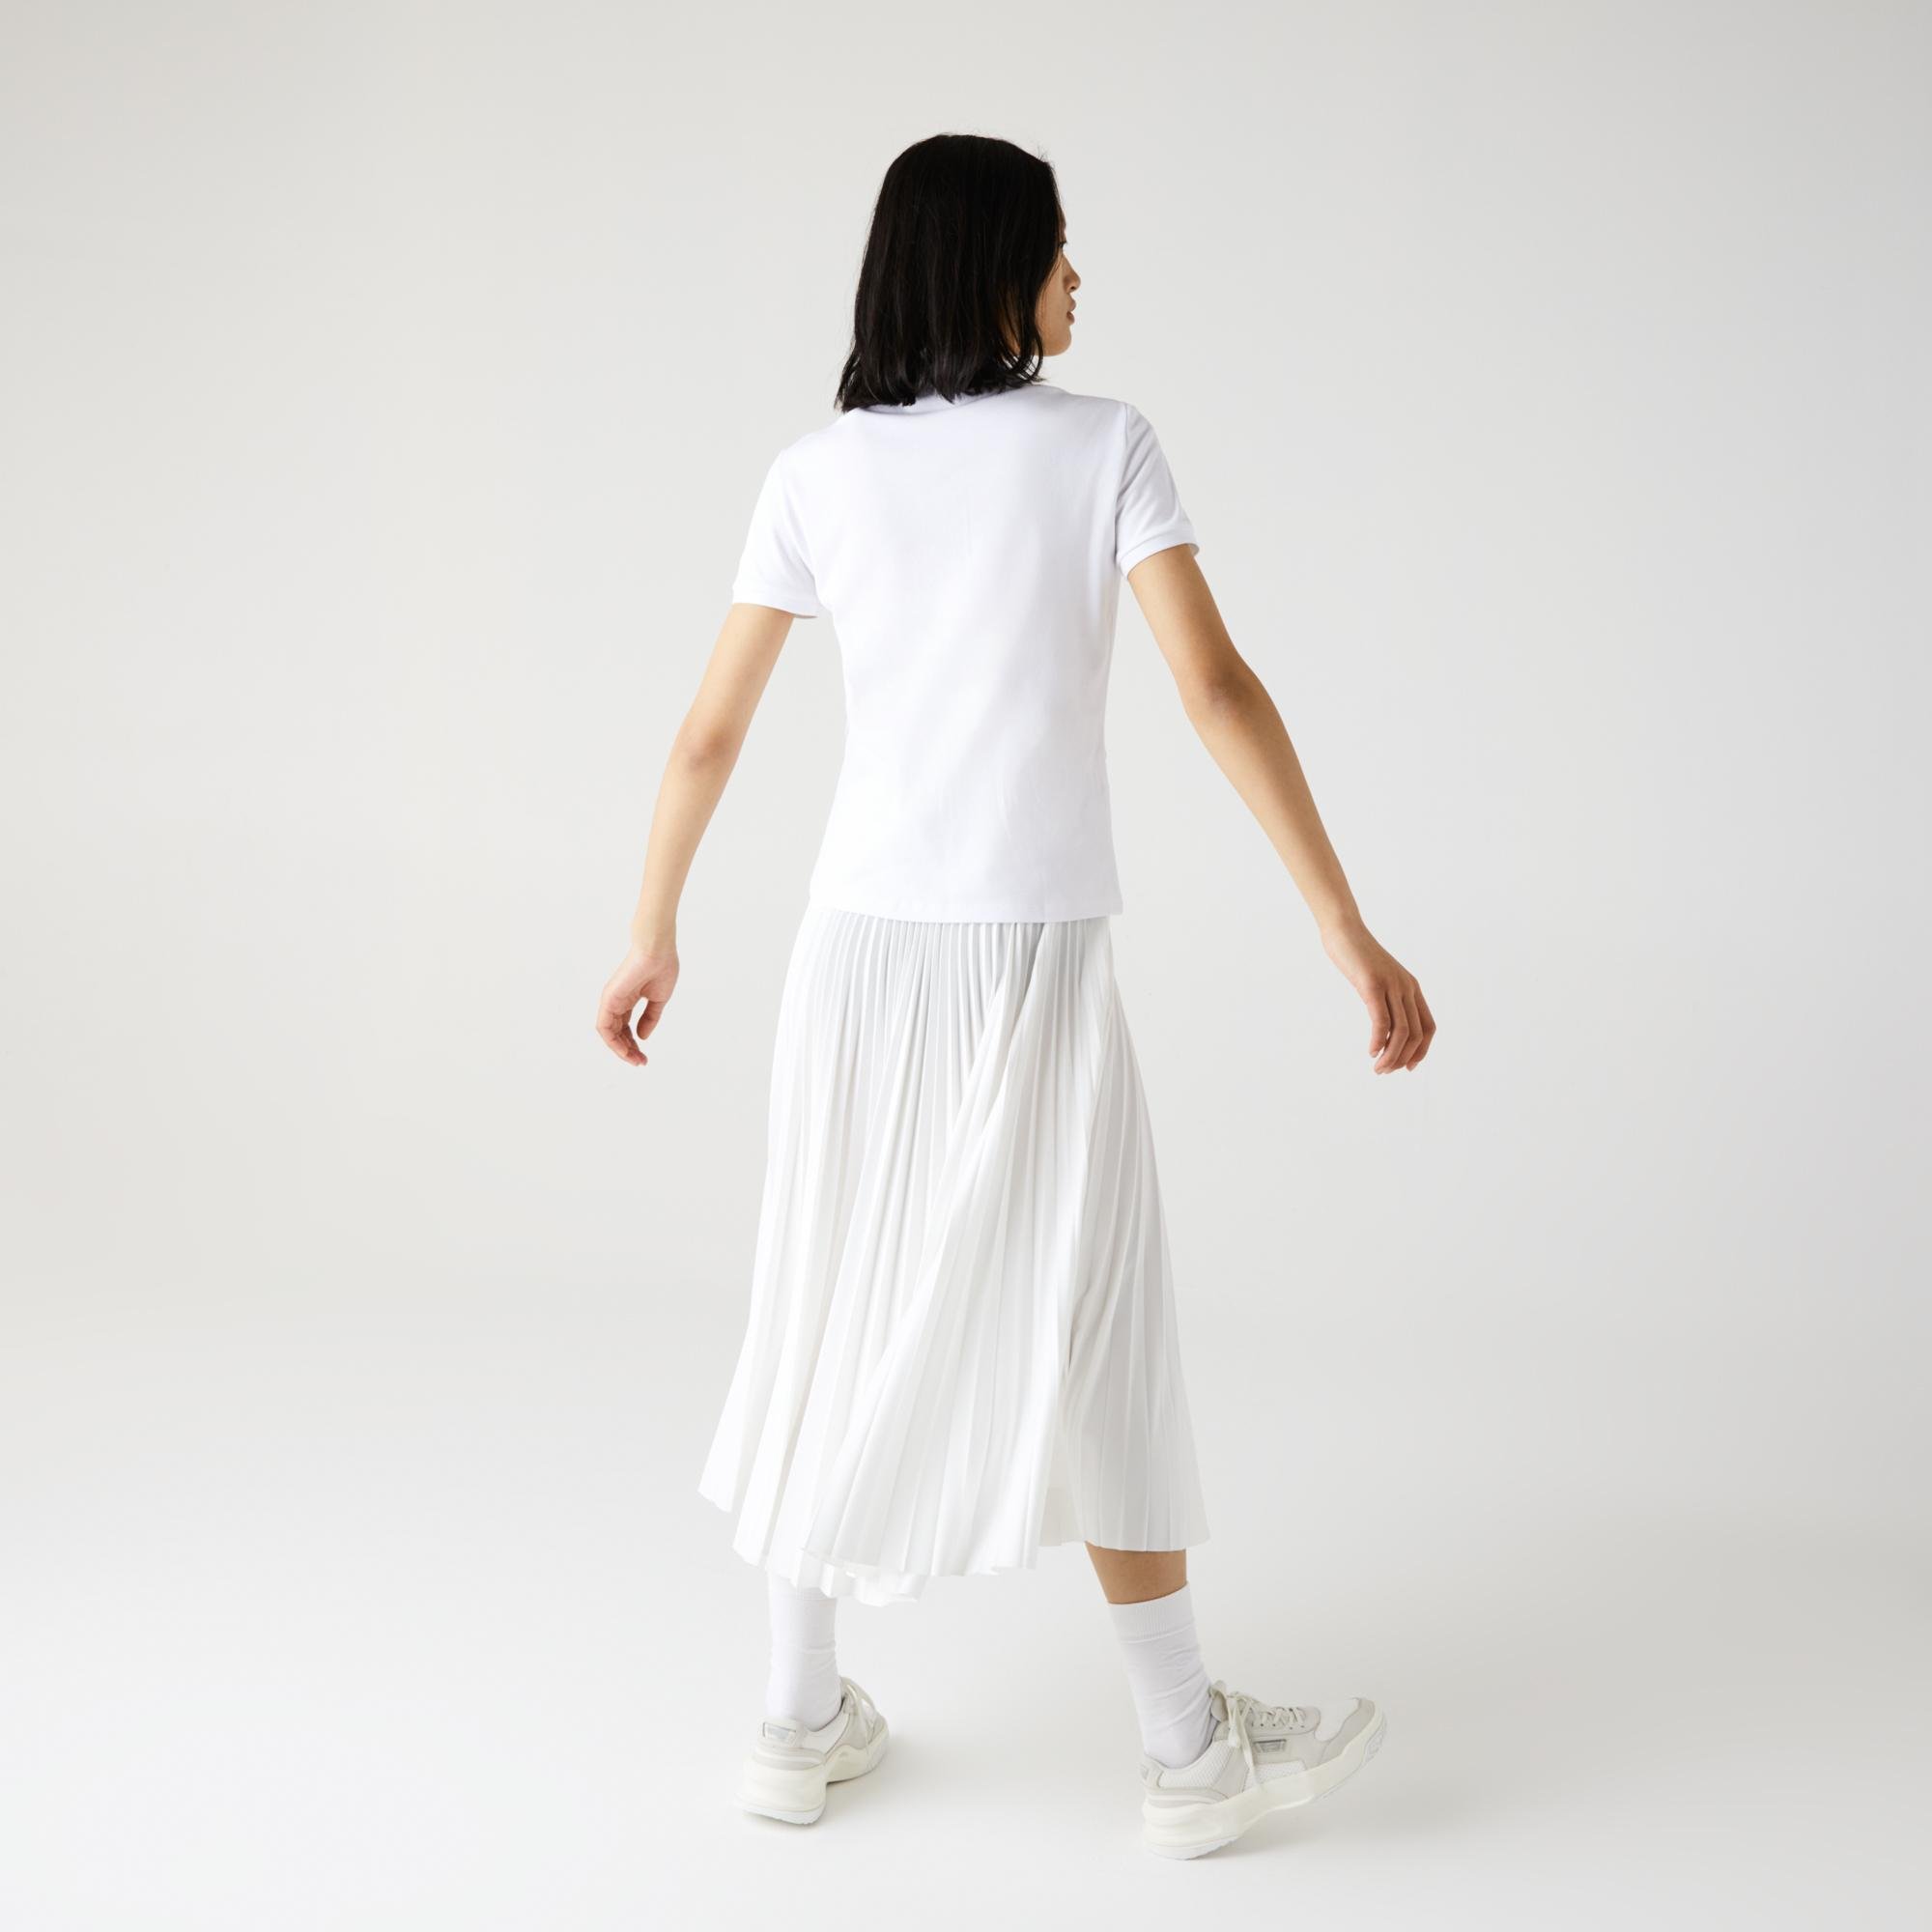 Lacoste női slim fit sztreccs rugalmas pamut piké pólóing